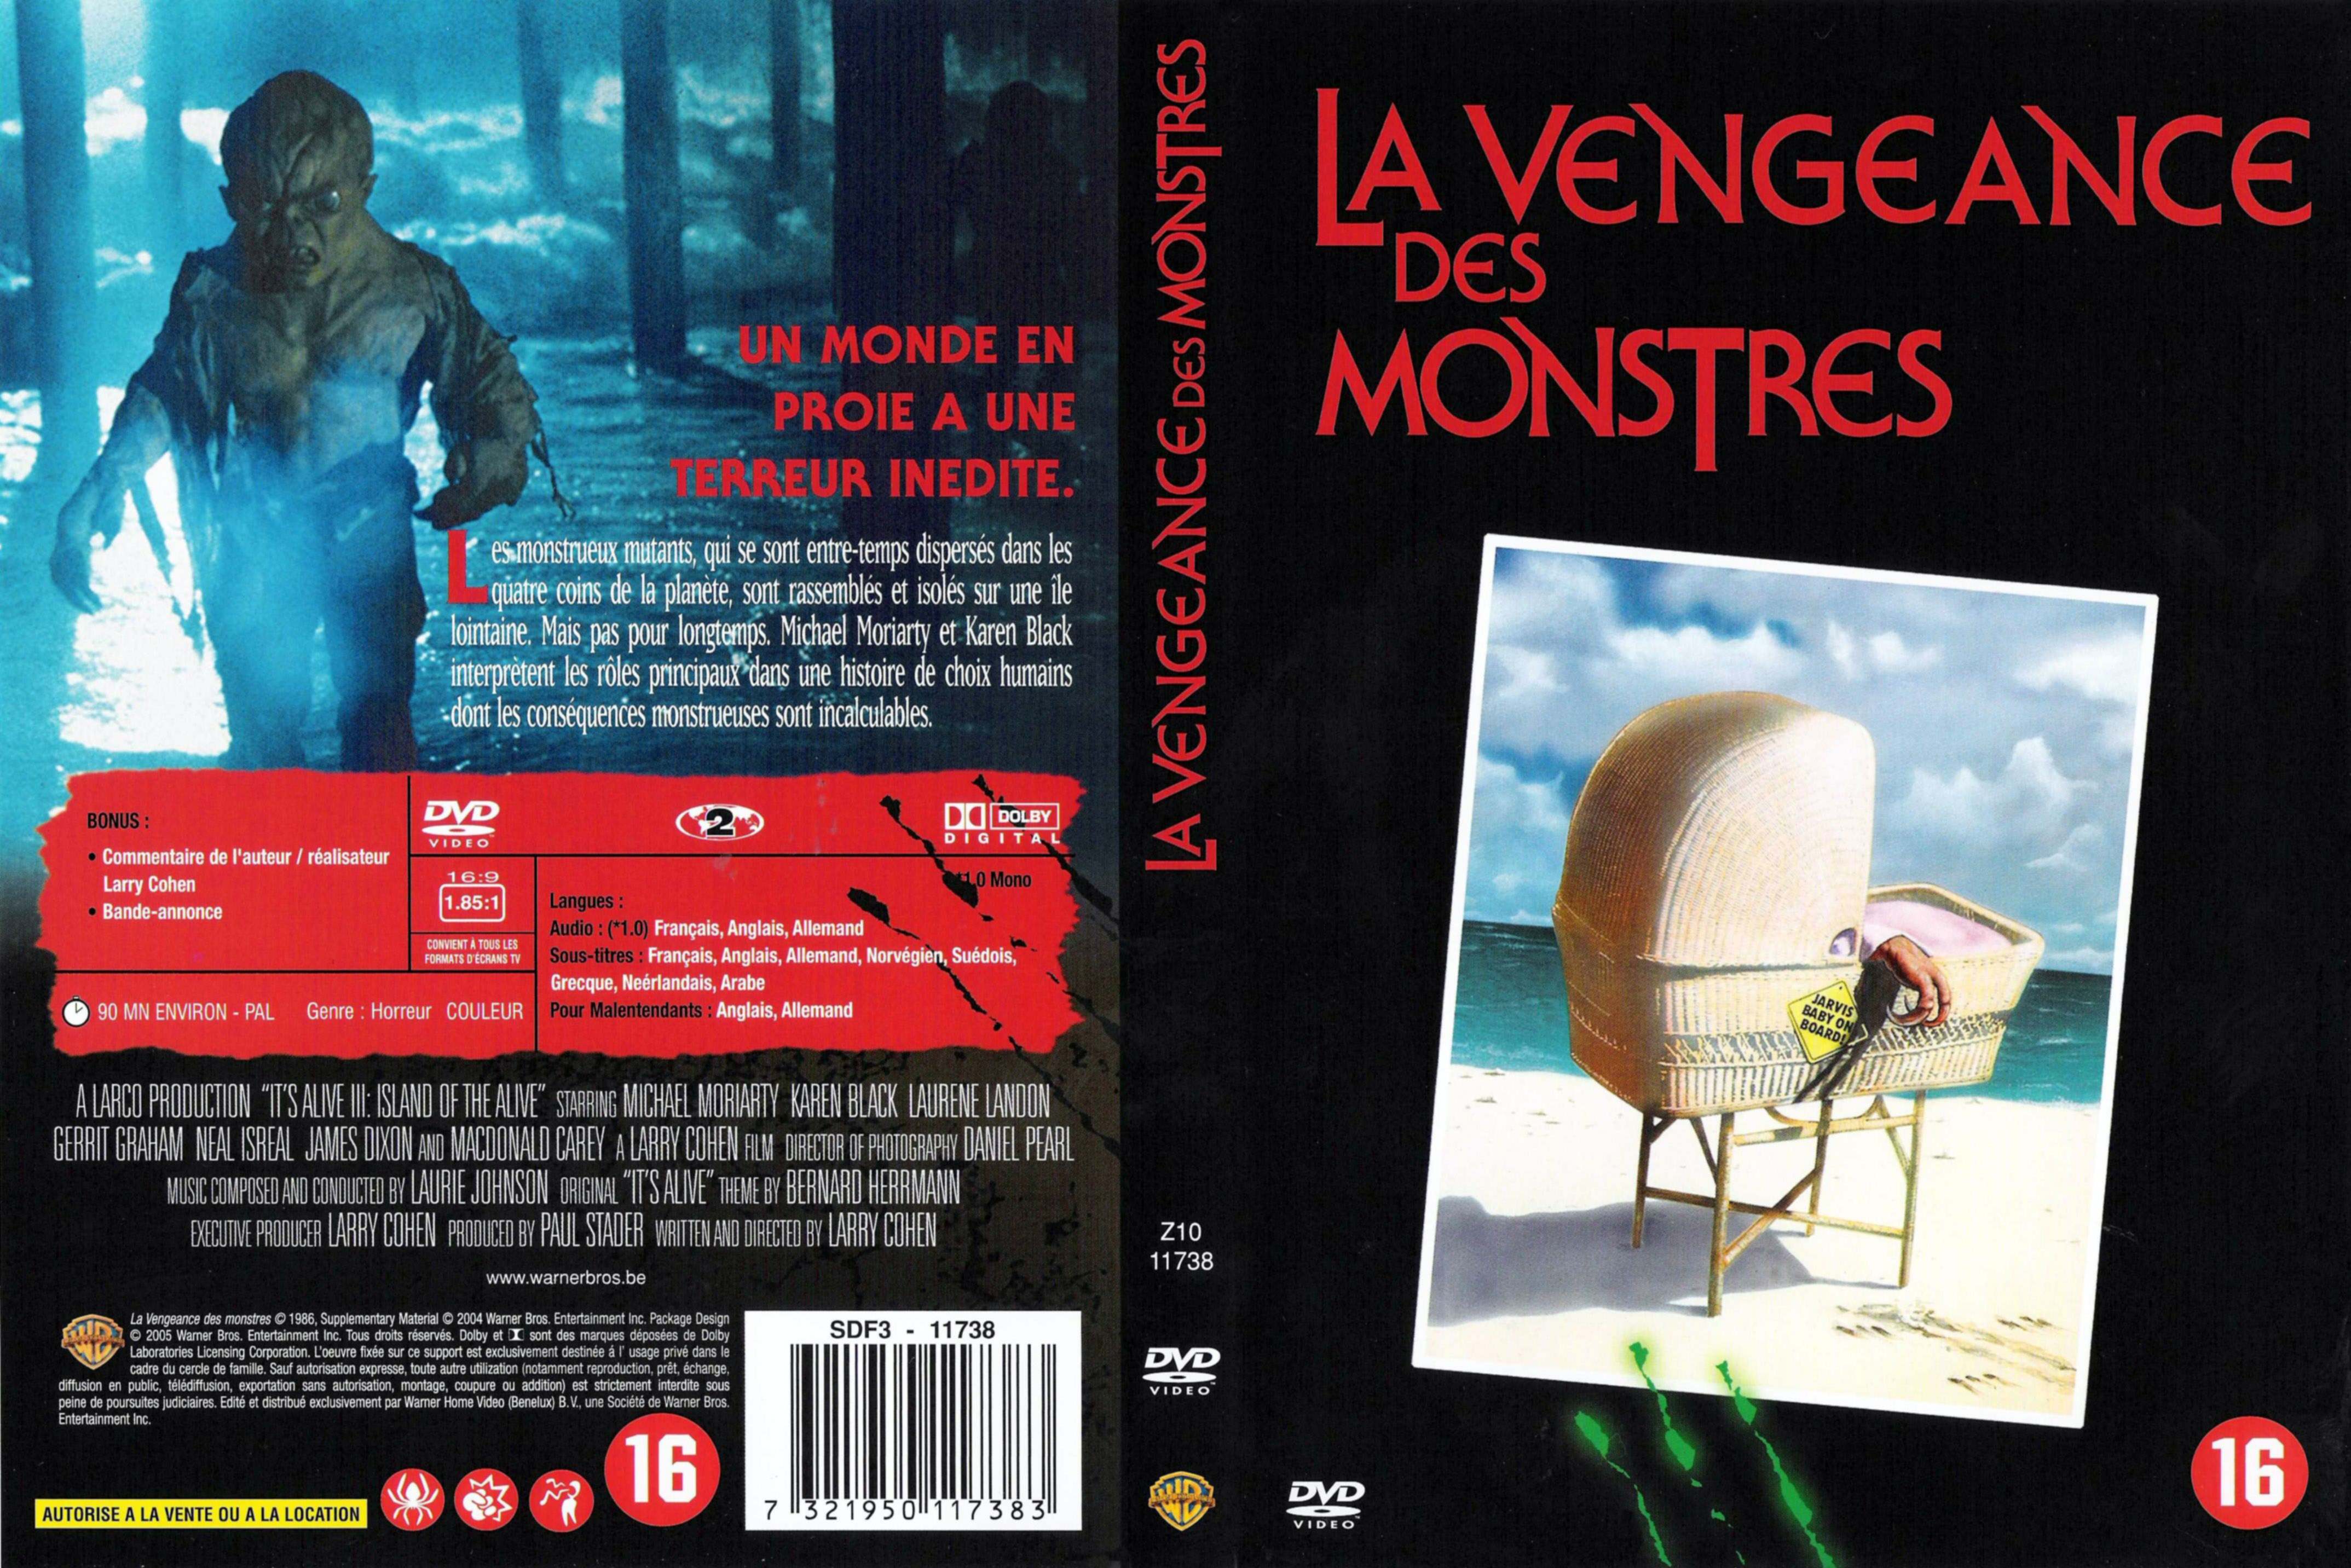 Jaquette DVD La vengeance des monstres